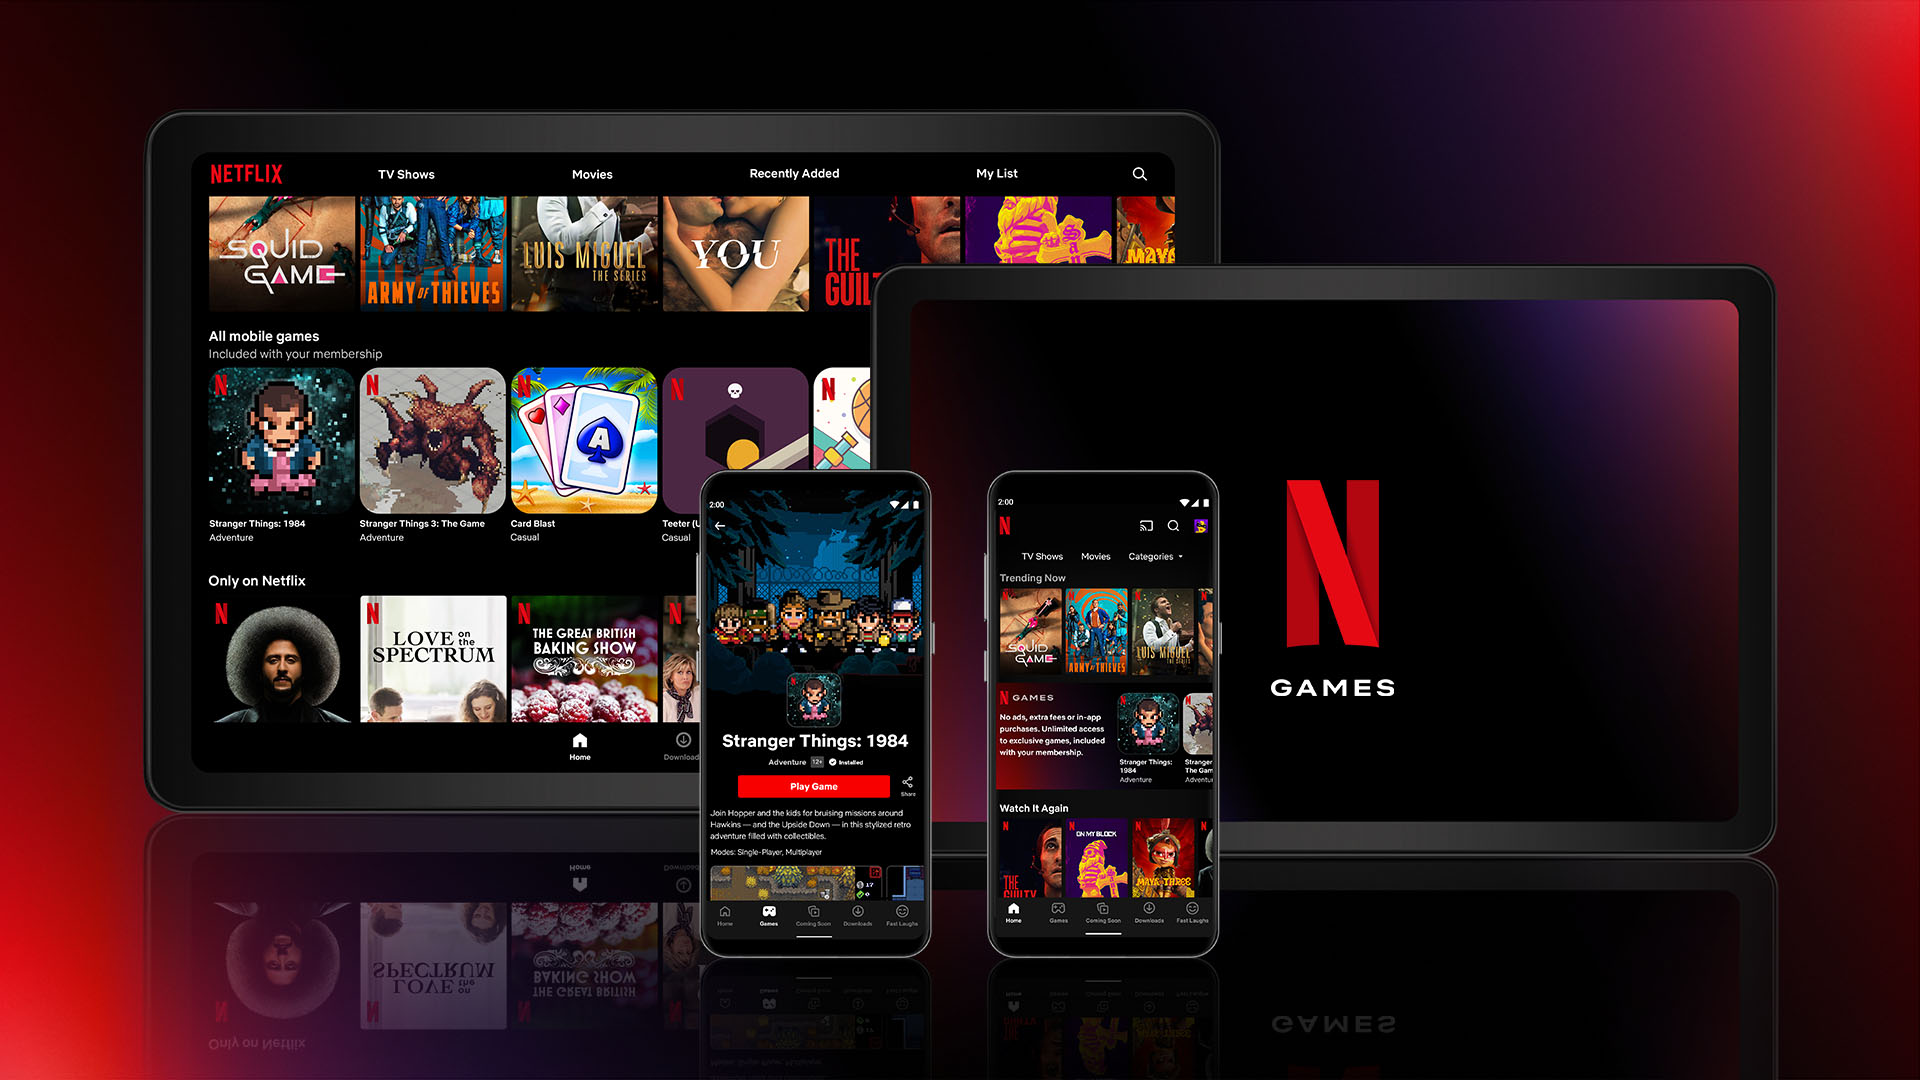 Le nouveau service de jeux mobiles de Netflix est lancé aujourd'hui dans le monde entier pour les abonnés sous Android.